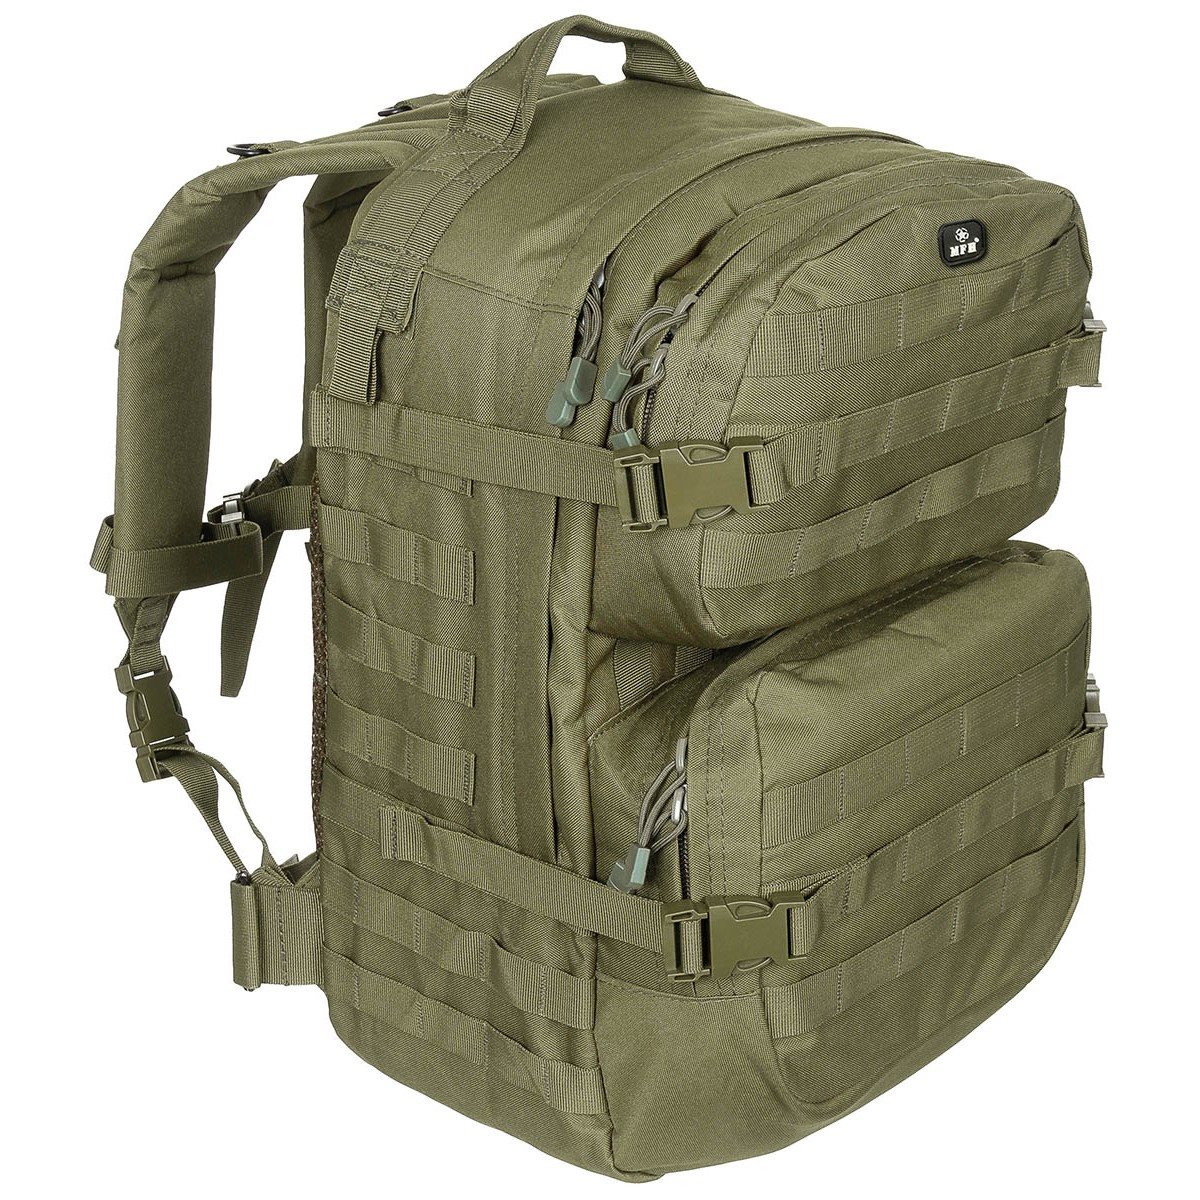 ASSAULT II backpack large olive MFH int. comp. 30343B L-11